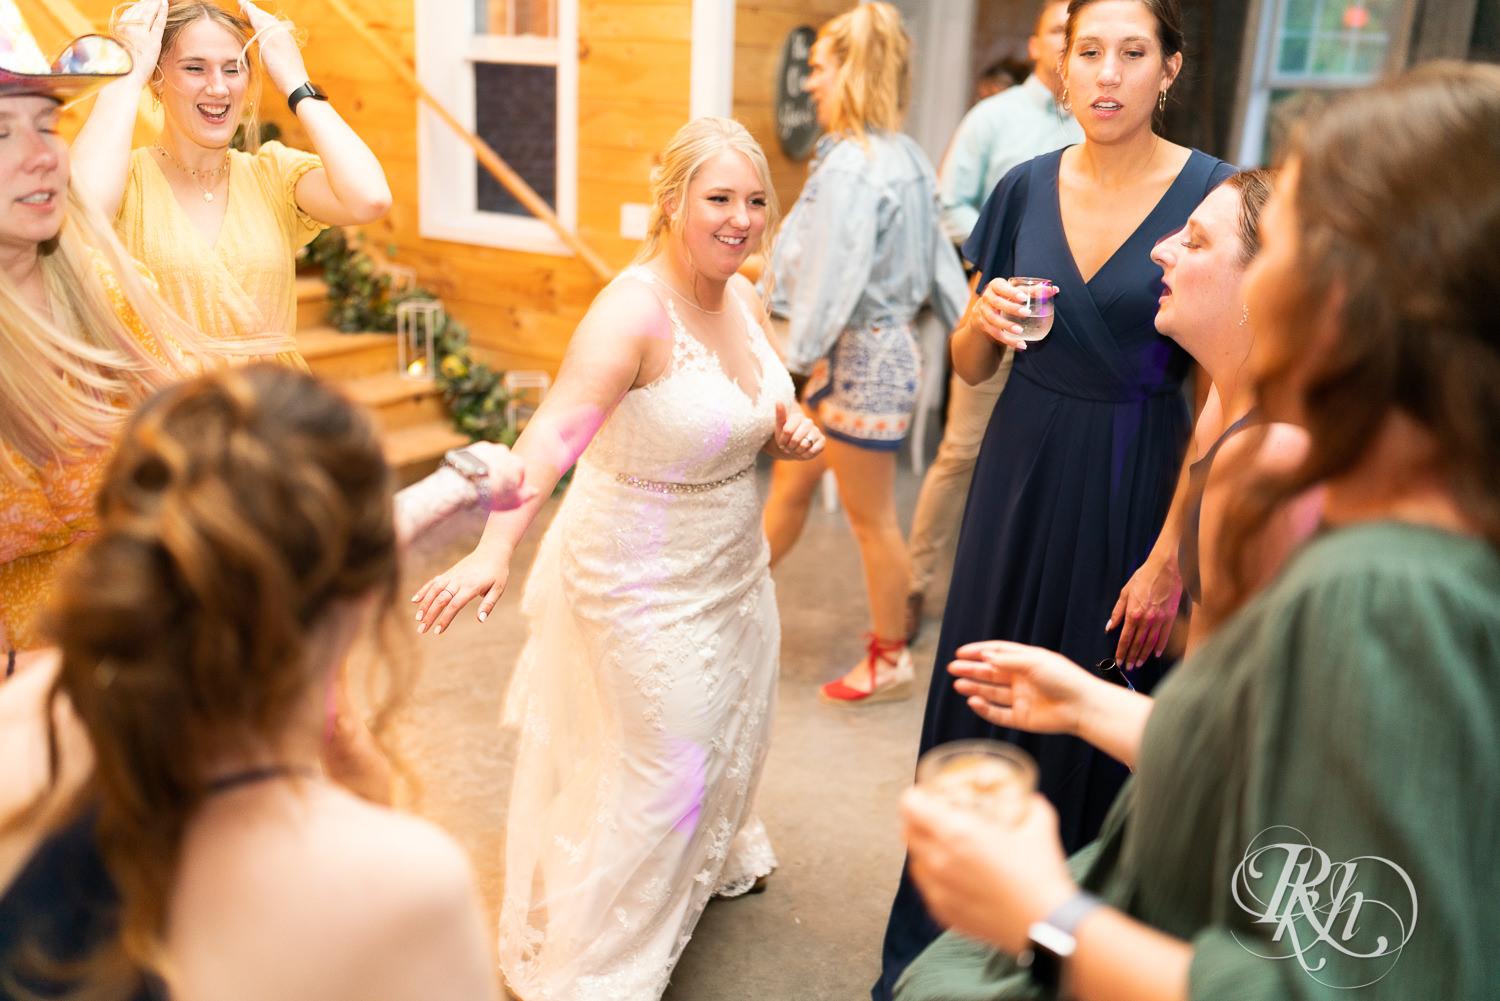 Guests dance at wedding reception at Barn at Mirror Lake in Mondovi, Wisconsin.